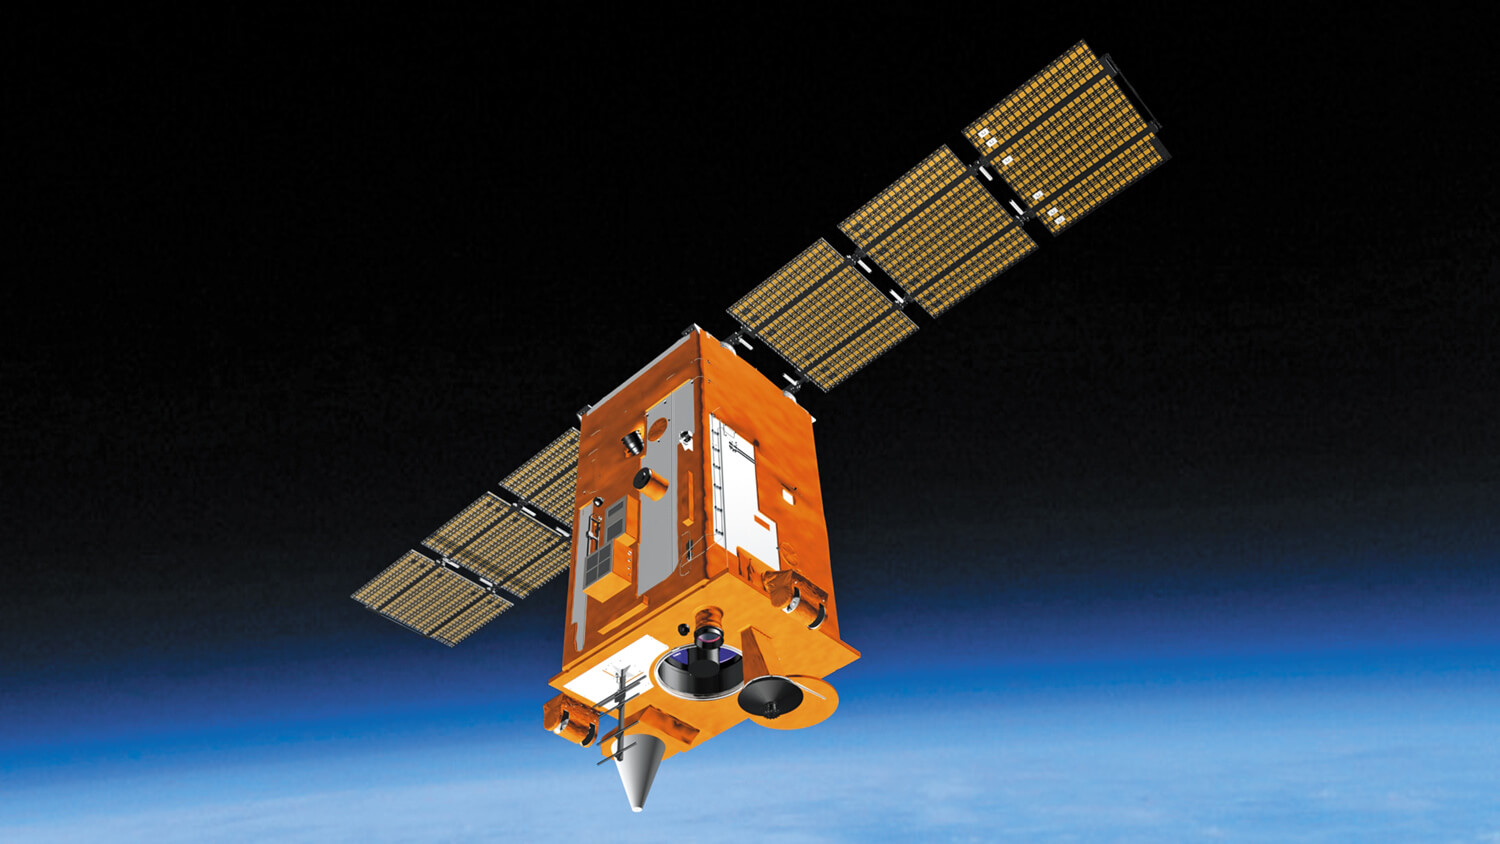 Как запускают спутники в космос: разработка «Аист-2Д» от первого лица